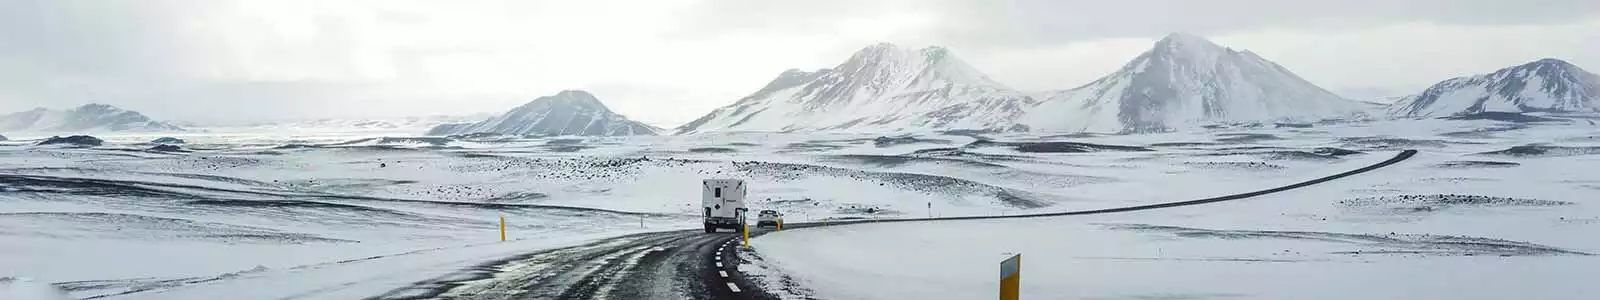 ijsland-winter-flydrive